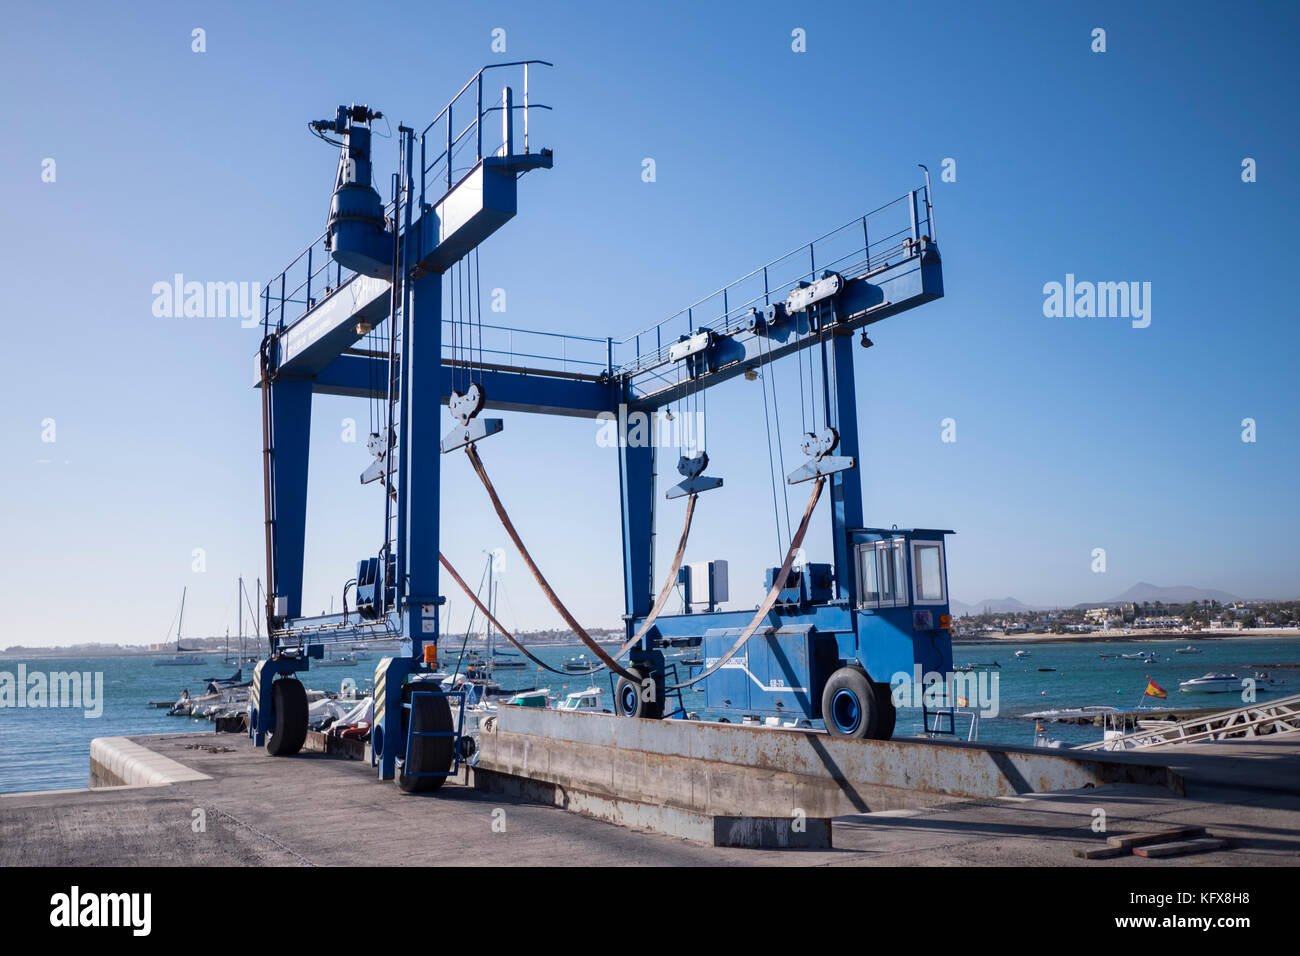 Boat Lift at the Marina Corralejo La Oliva Fuerteventura Canary Islands Spain Stock Photo